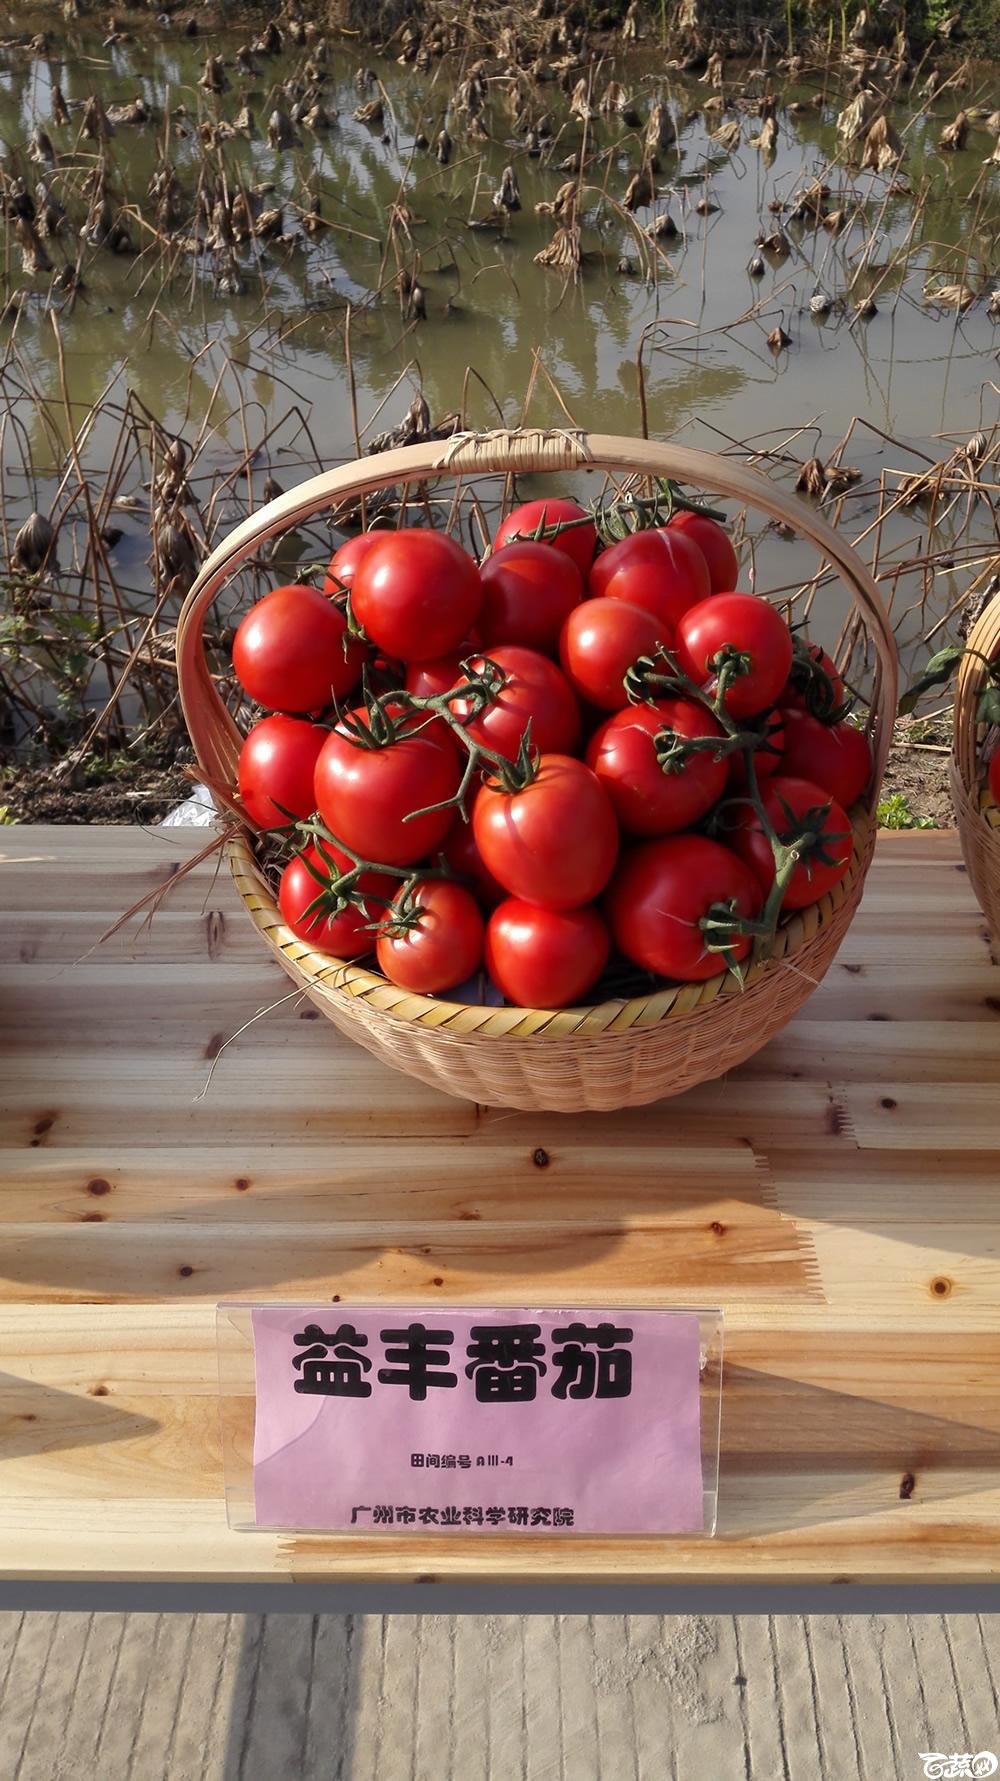 2014年12月10号广州市农科院南沙秋季蔬菜新品种展示会_番茄_007.jpg